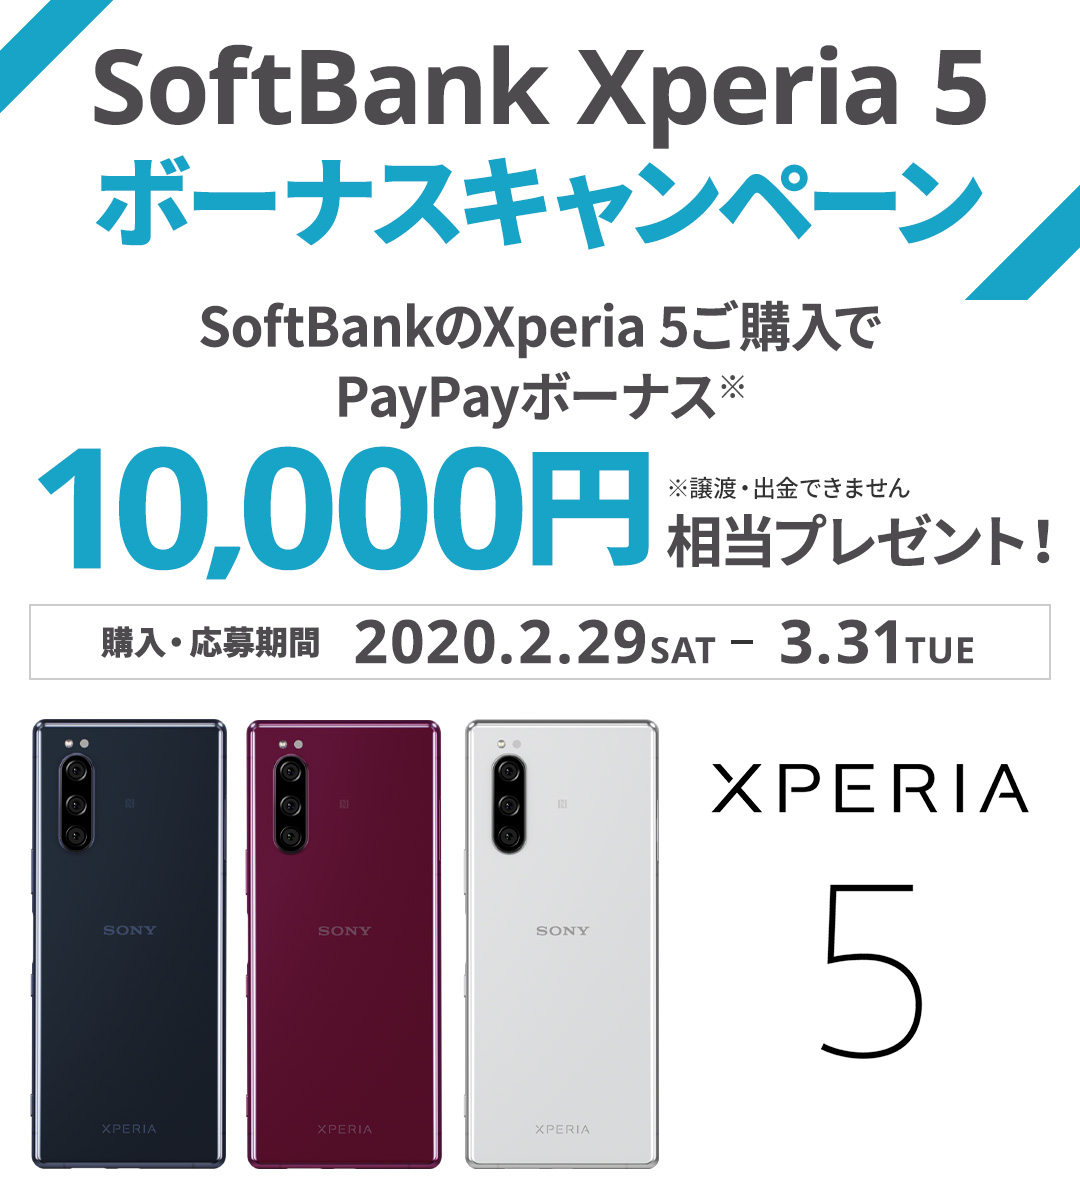 SoftBank Xperia 5ボーナスキャンペーン SoftBankのXperia 5ご購入でPayPayボーナス※10,000円相当プレゼント！※譲渡・出金できません。